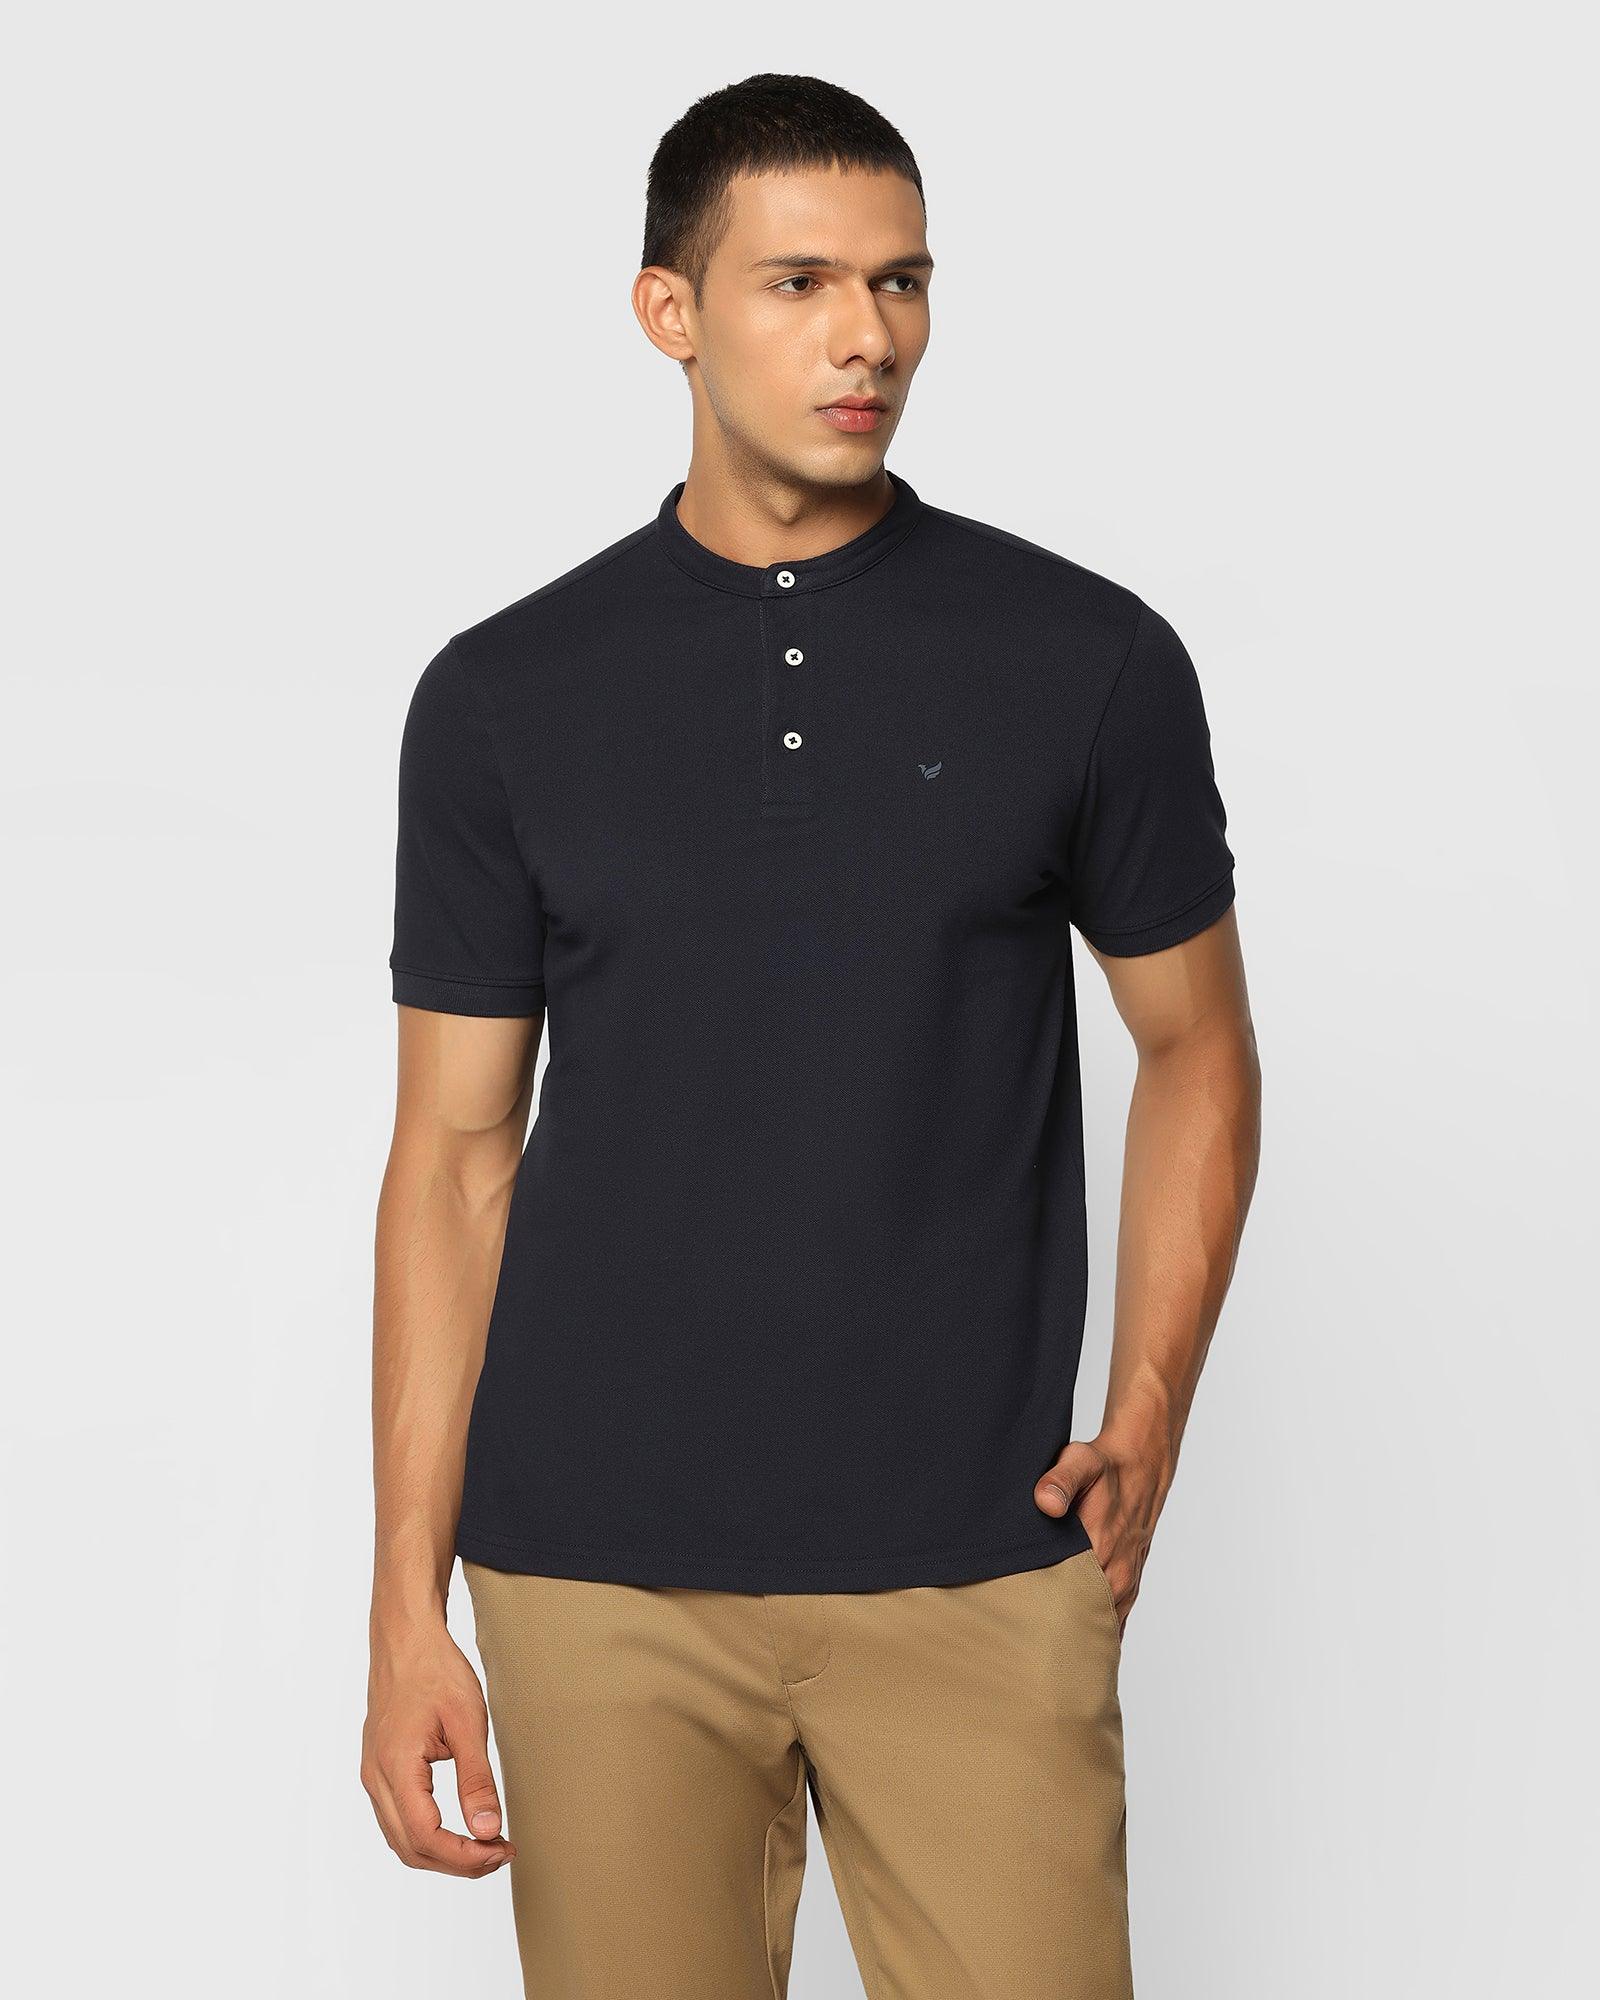 Henley Collar Navy Solid T Shirt - Kell